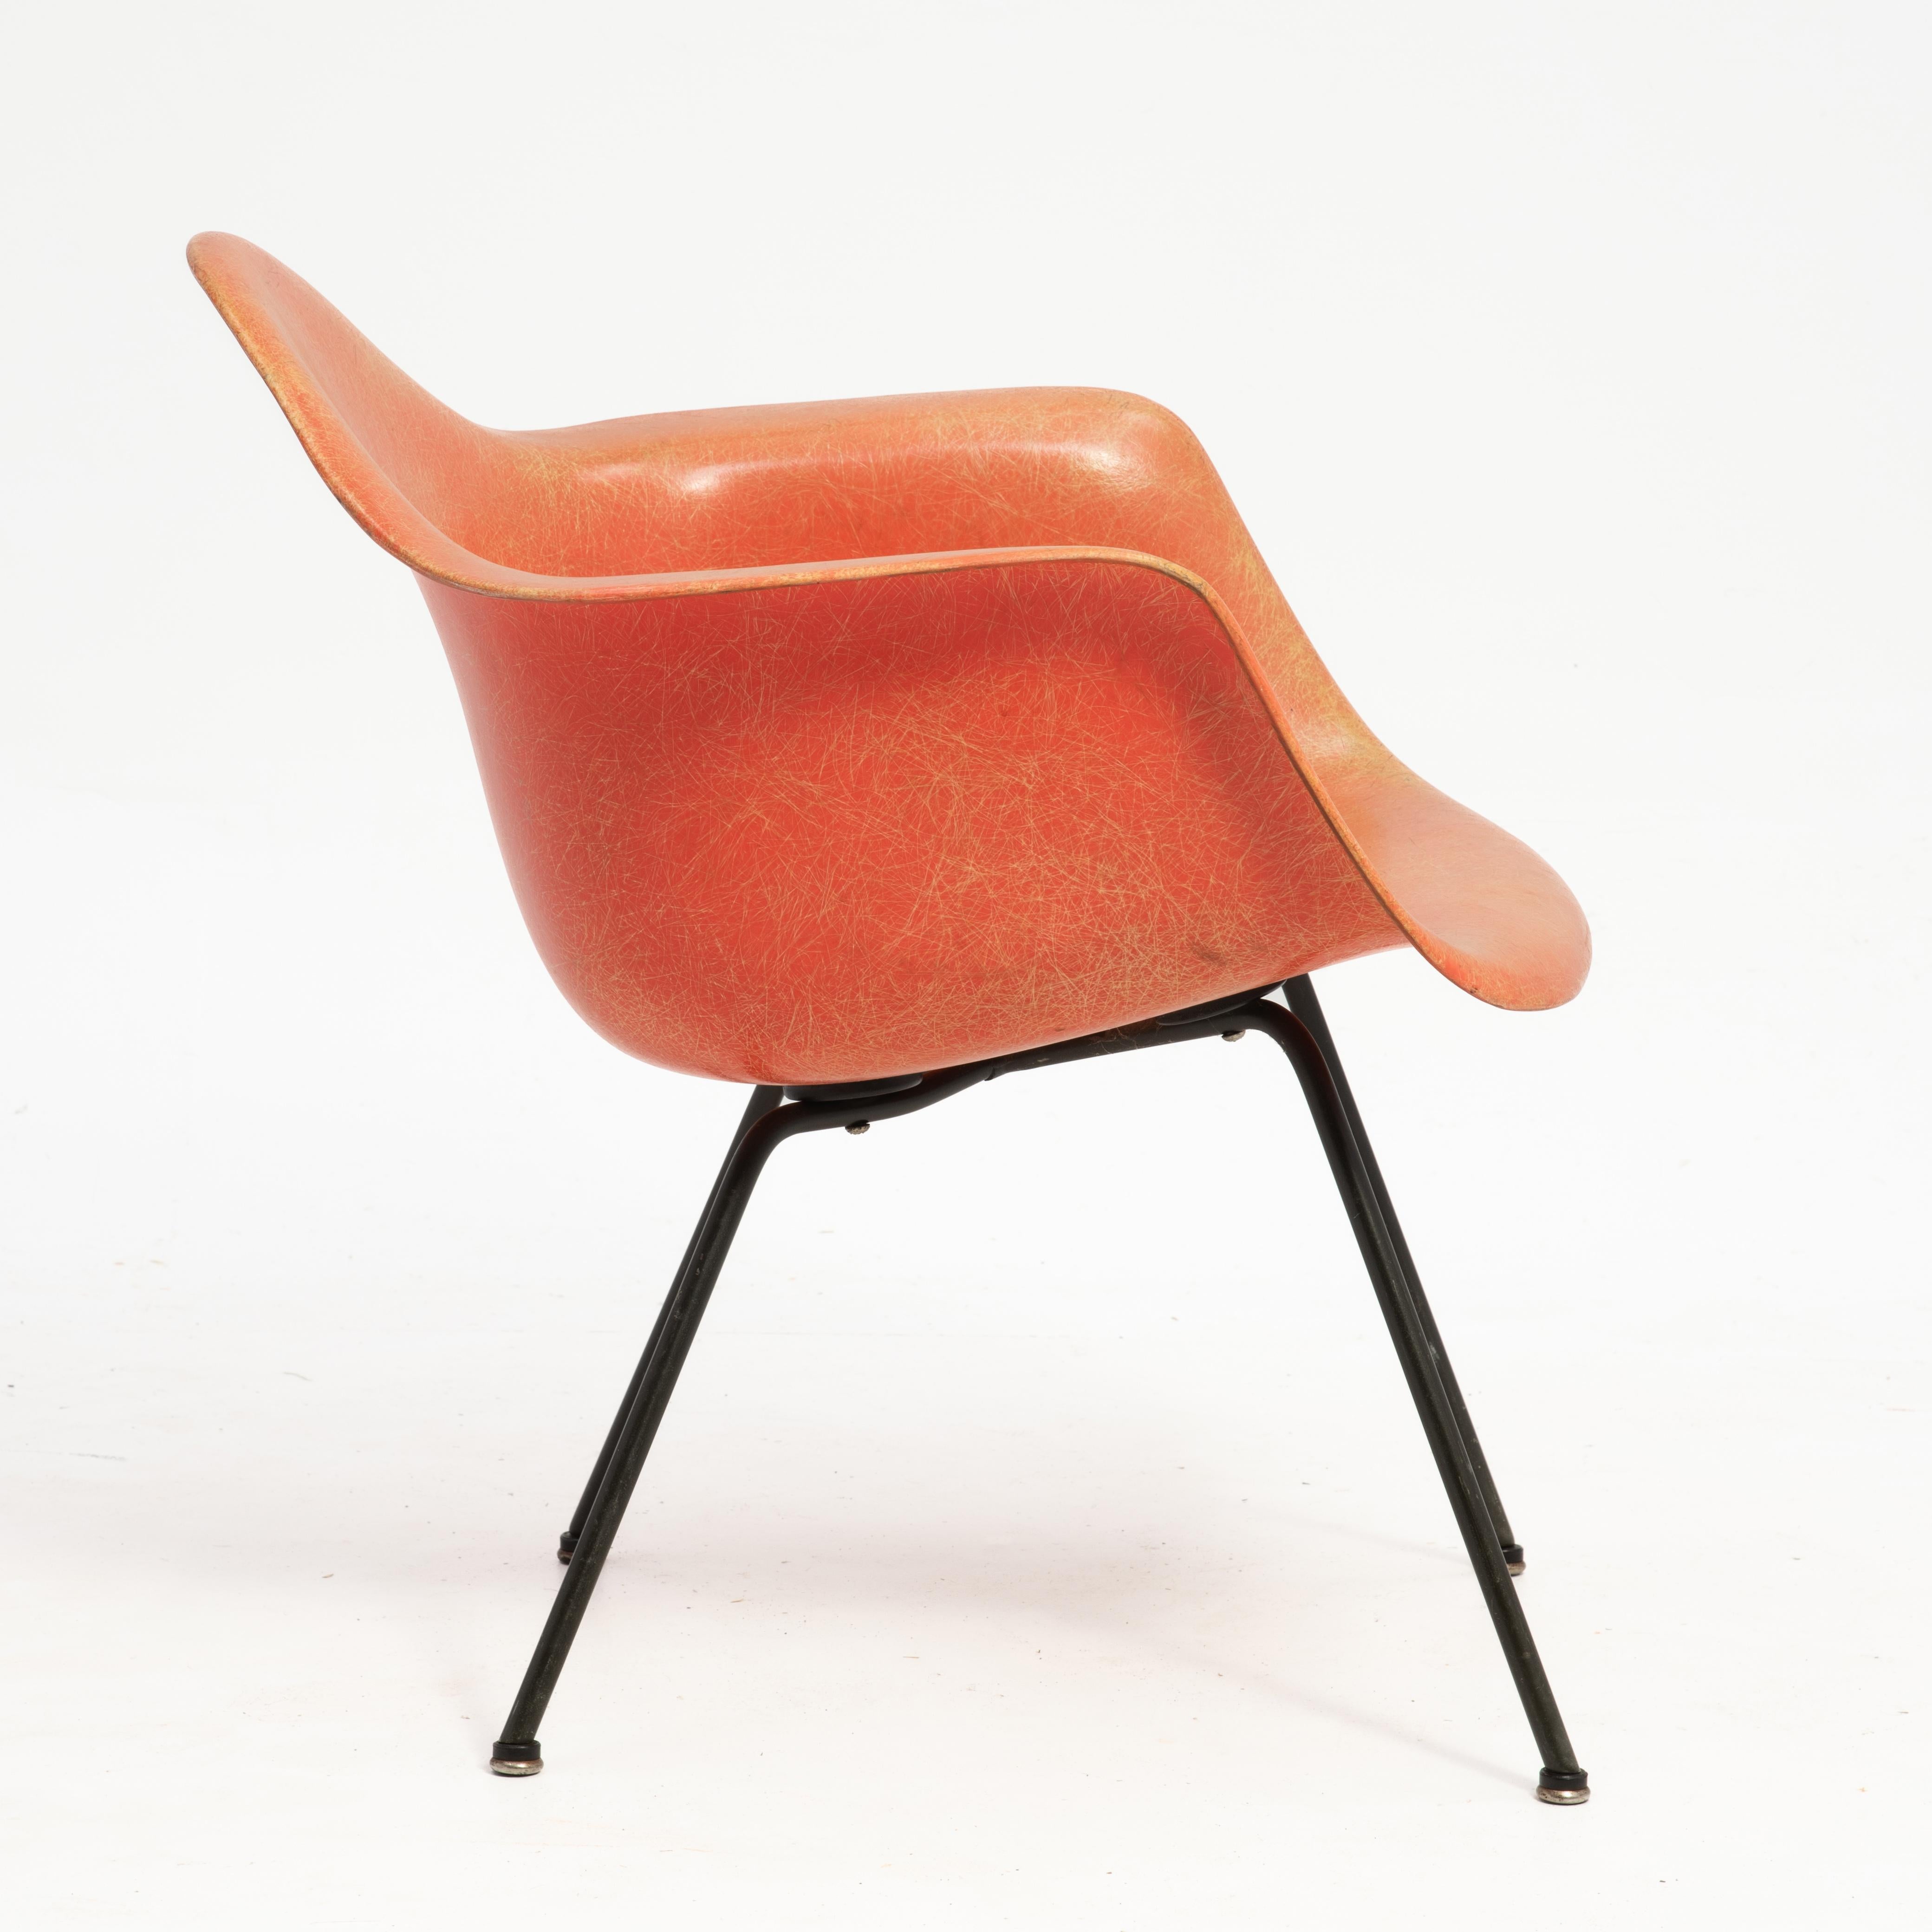 Un fabuleux fauteuil transitionnel Charles & Ray Eames produit par Herman Miller avec Zenith Plastics. La chaise LAX de couleur saumon est dotée d'un bord en corde, d'une base en X, de grands supports d'amortisseurs, de patins à bottes et de